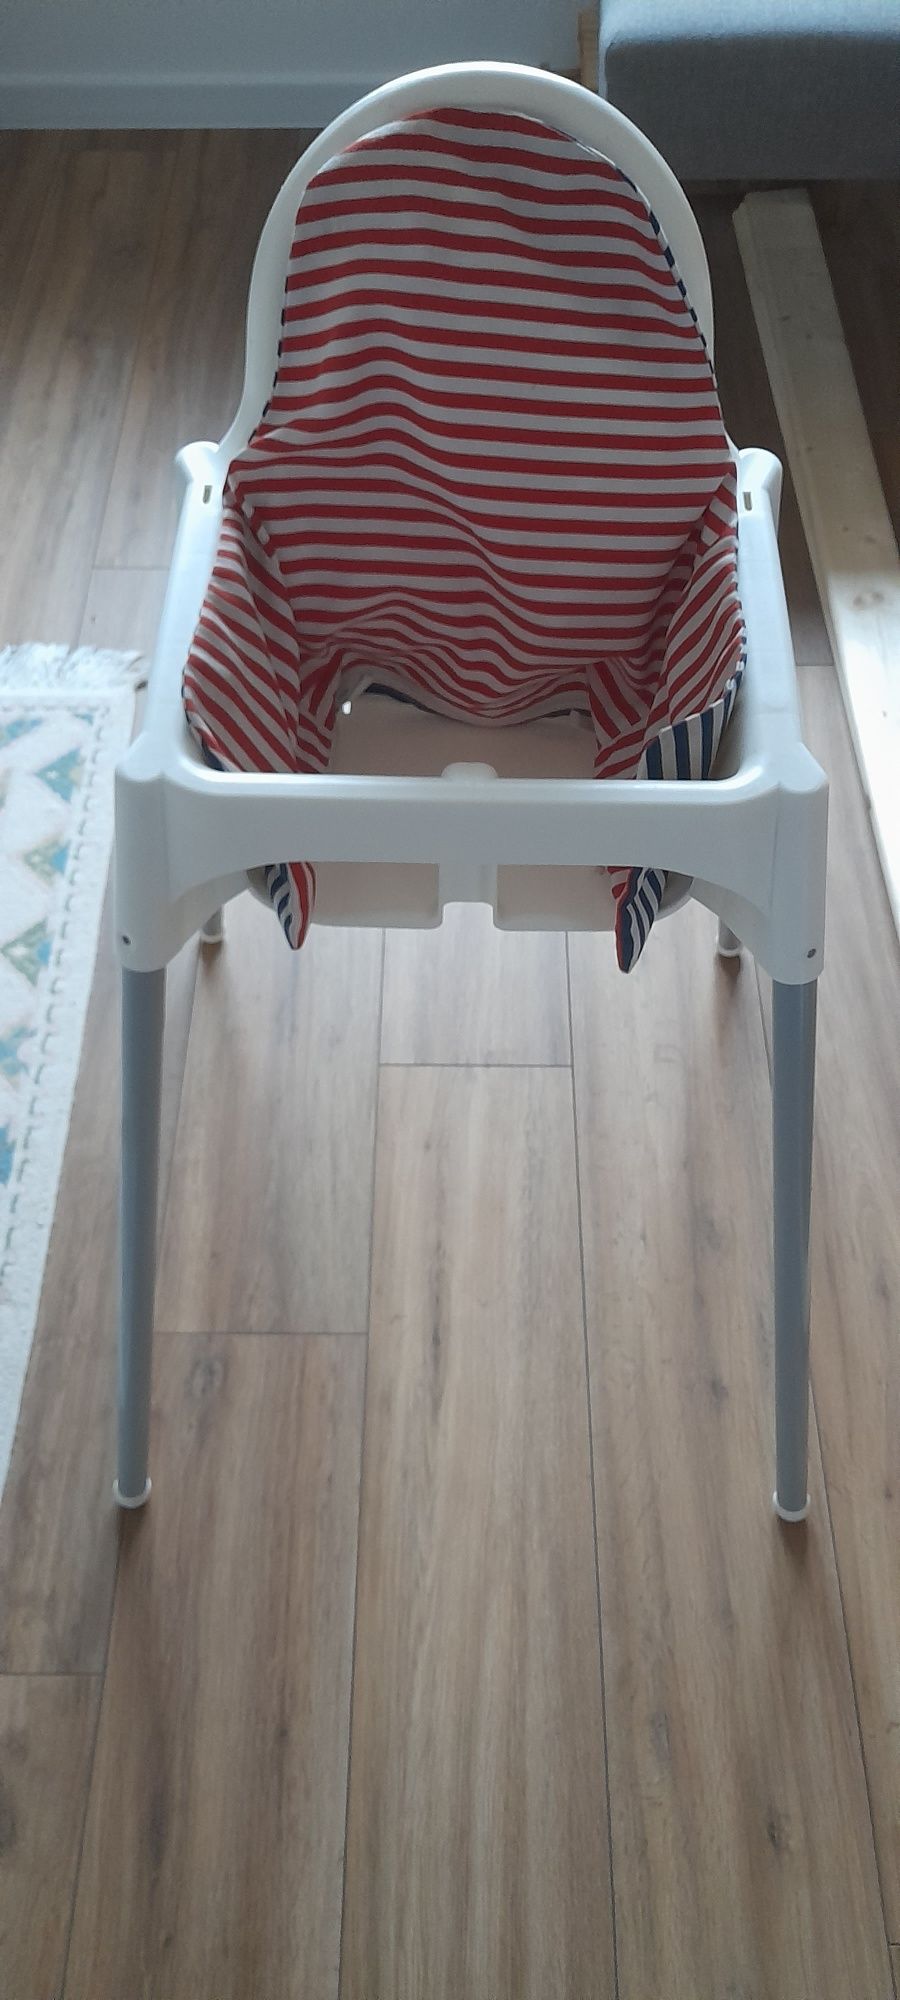 Krzeselo do karmienia dziecka Ikea Antilop